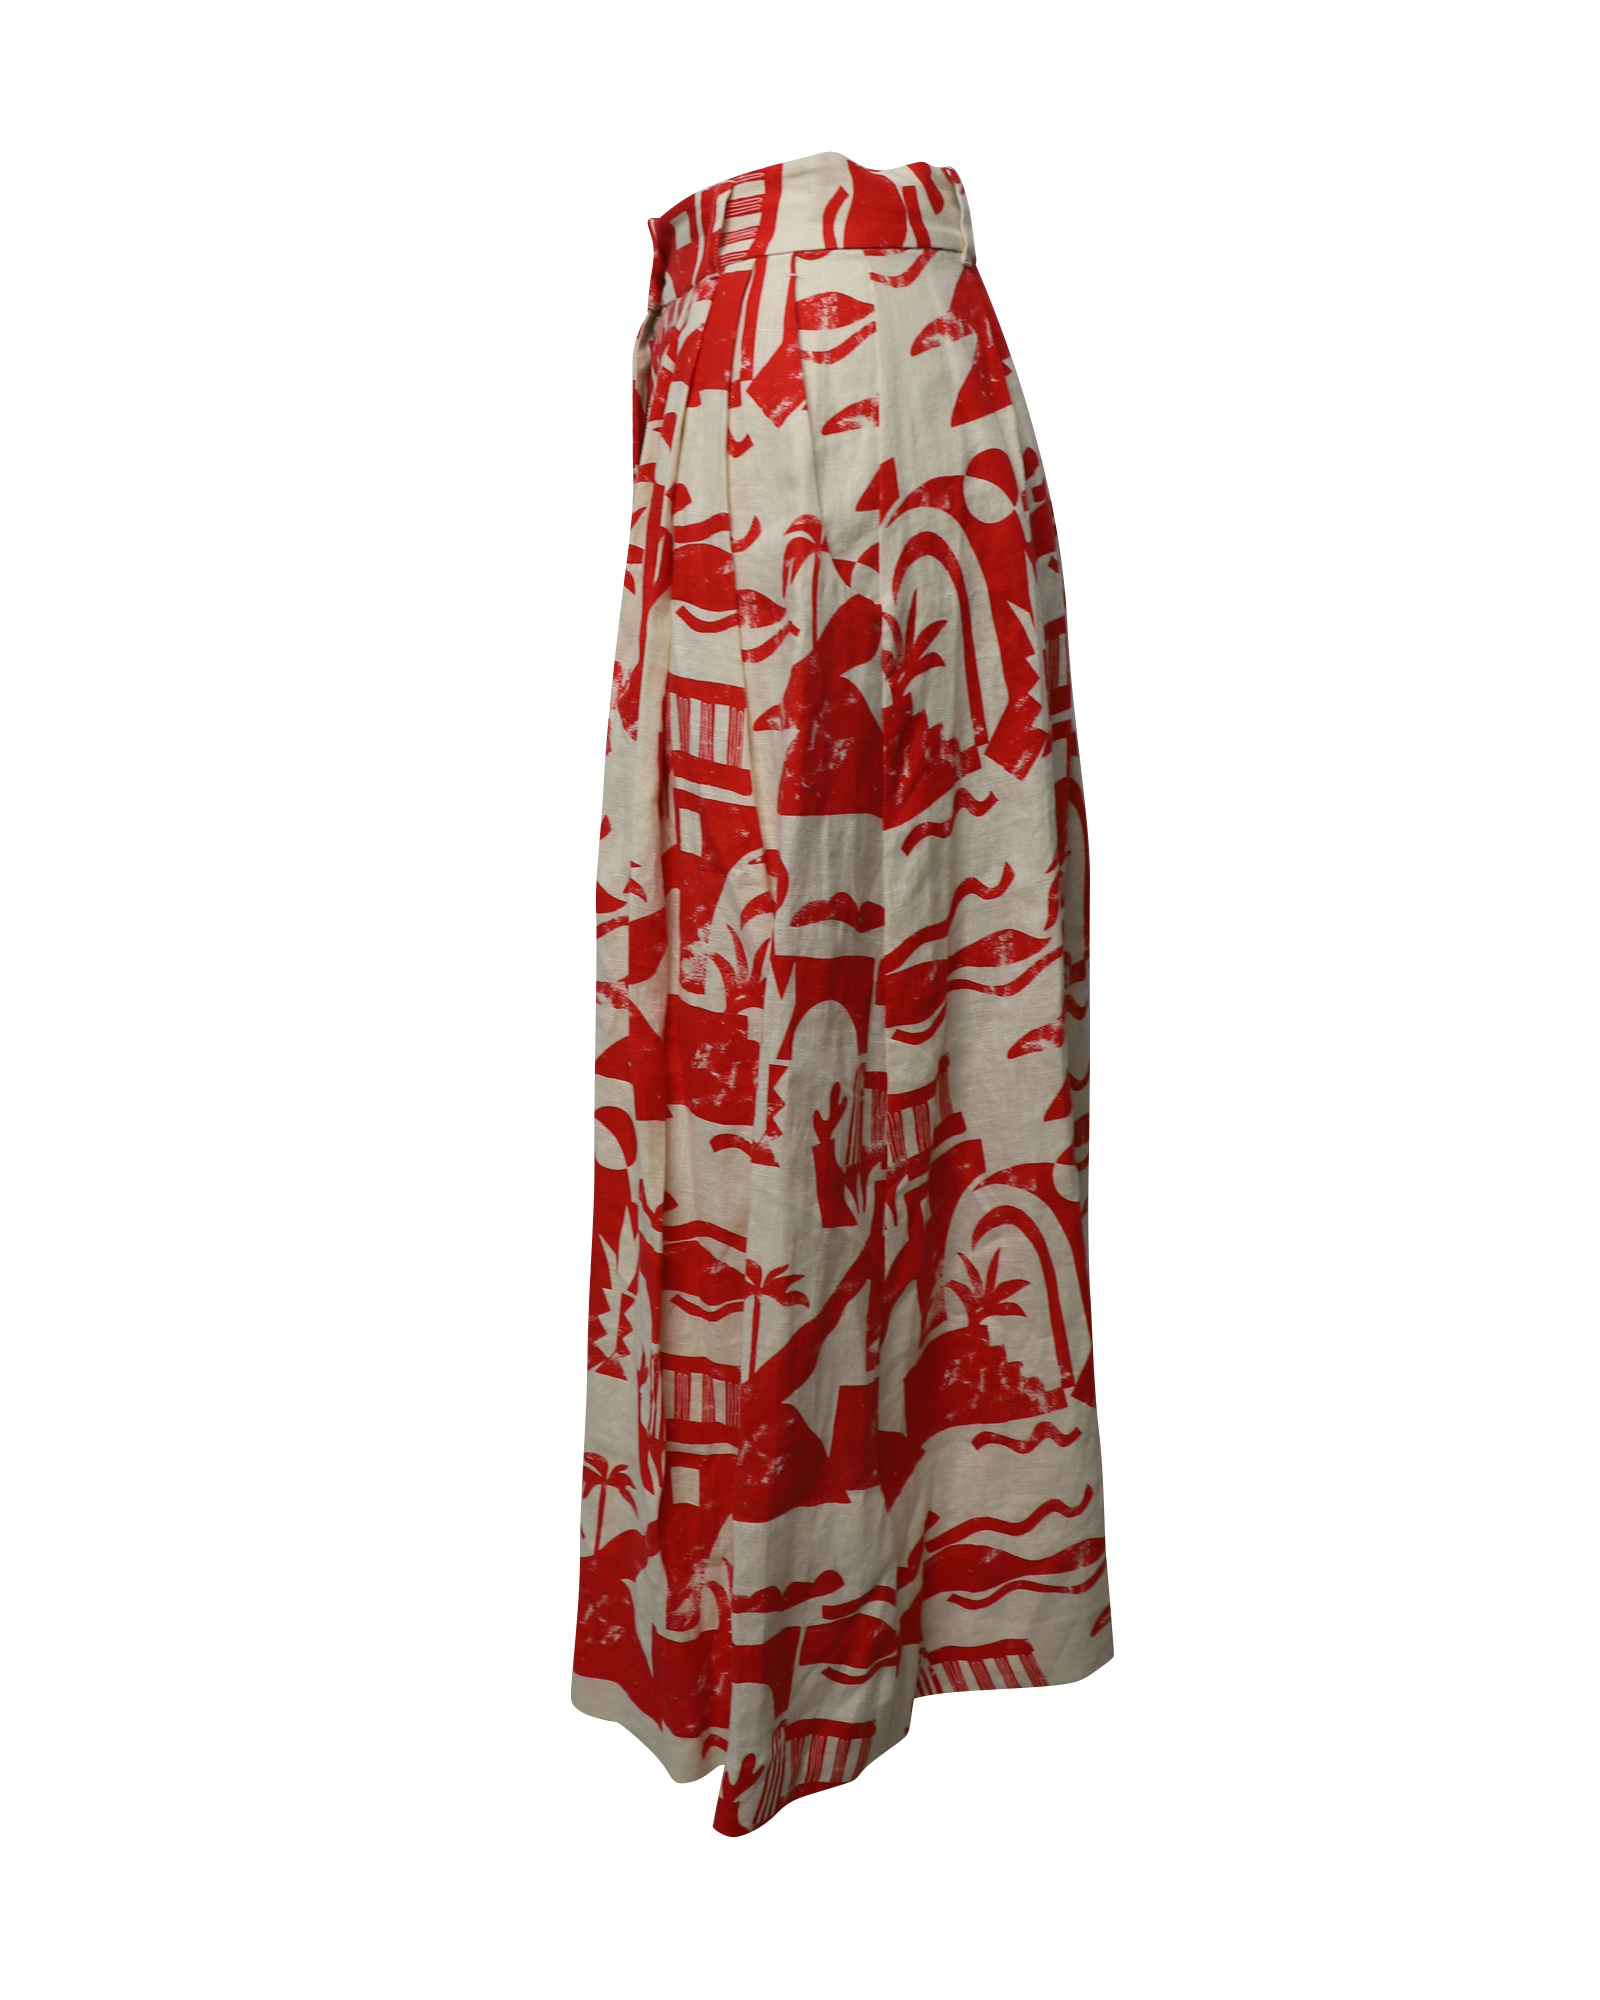 Red and Cream Hemp Printed Maxi Skirt